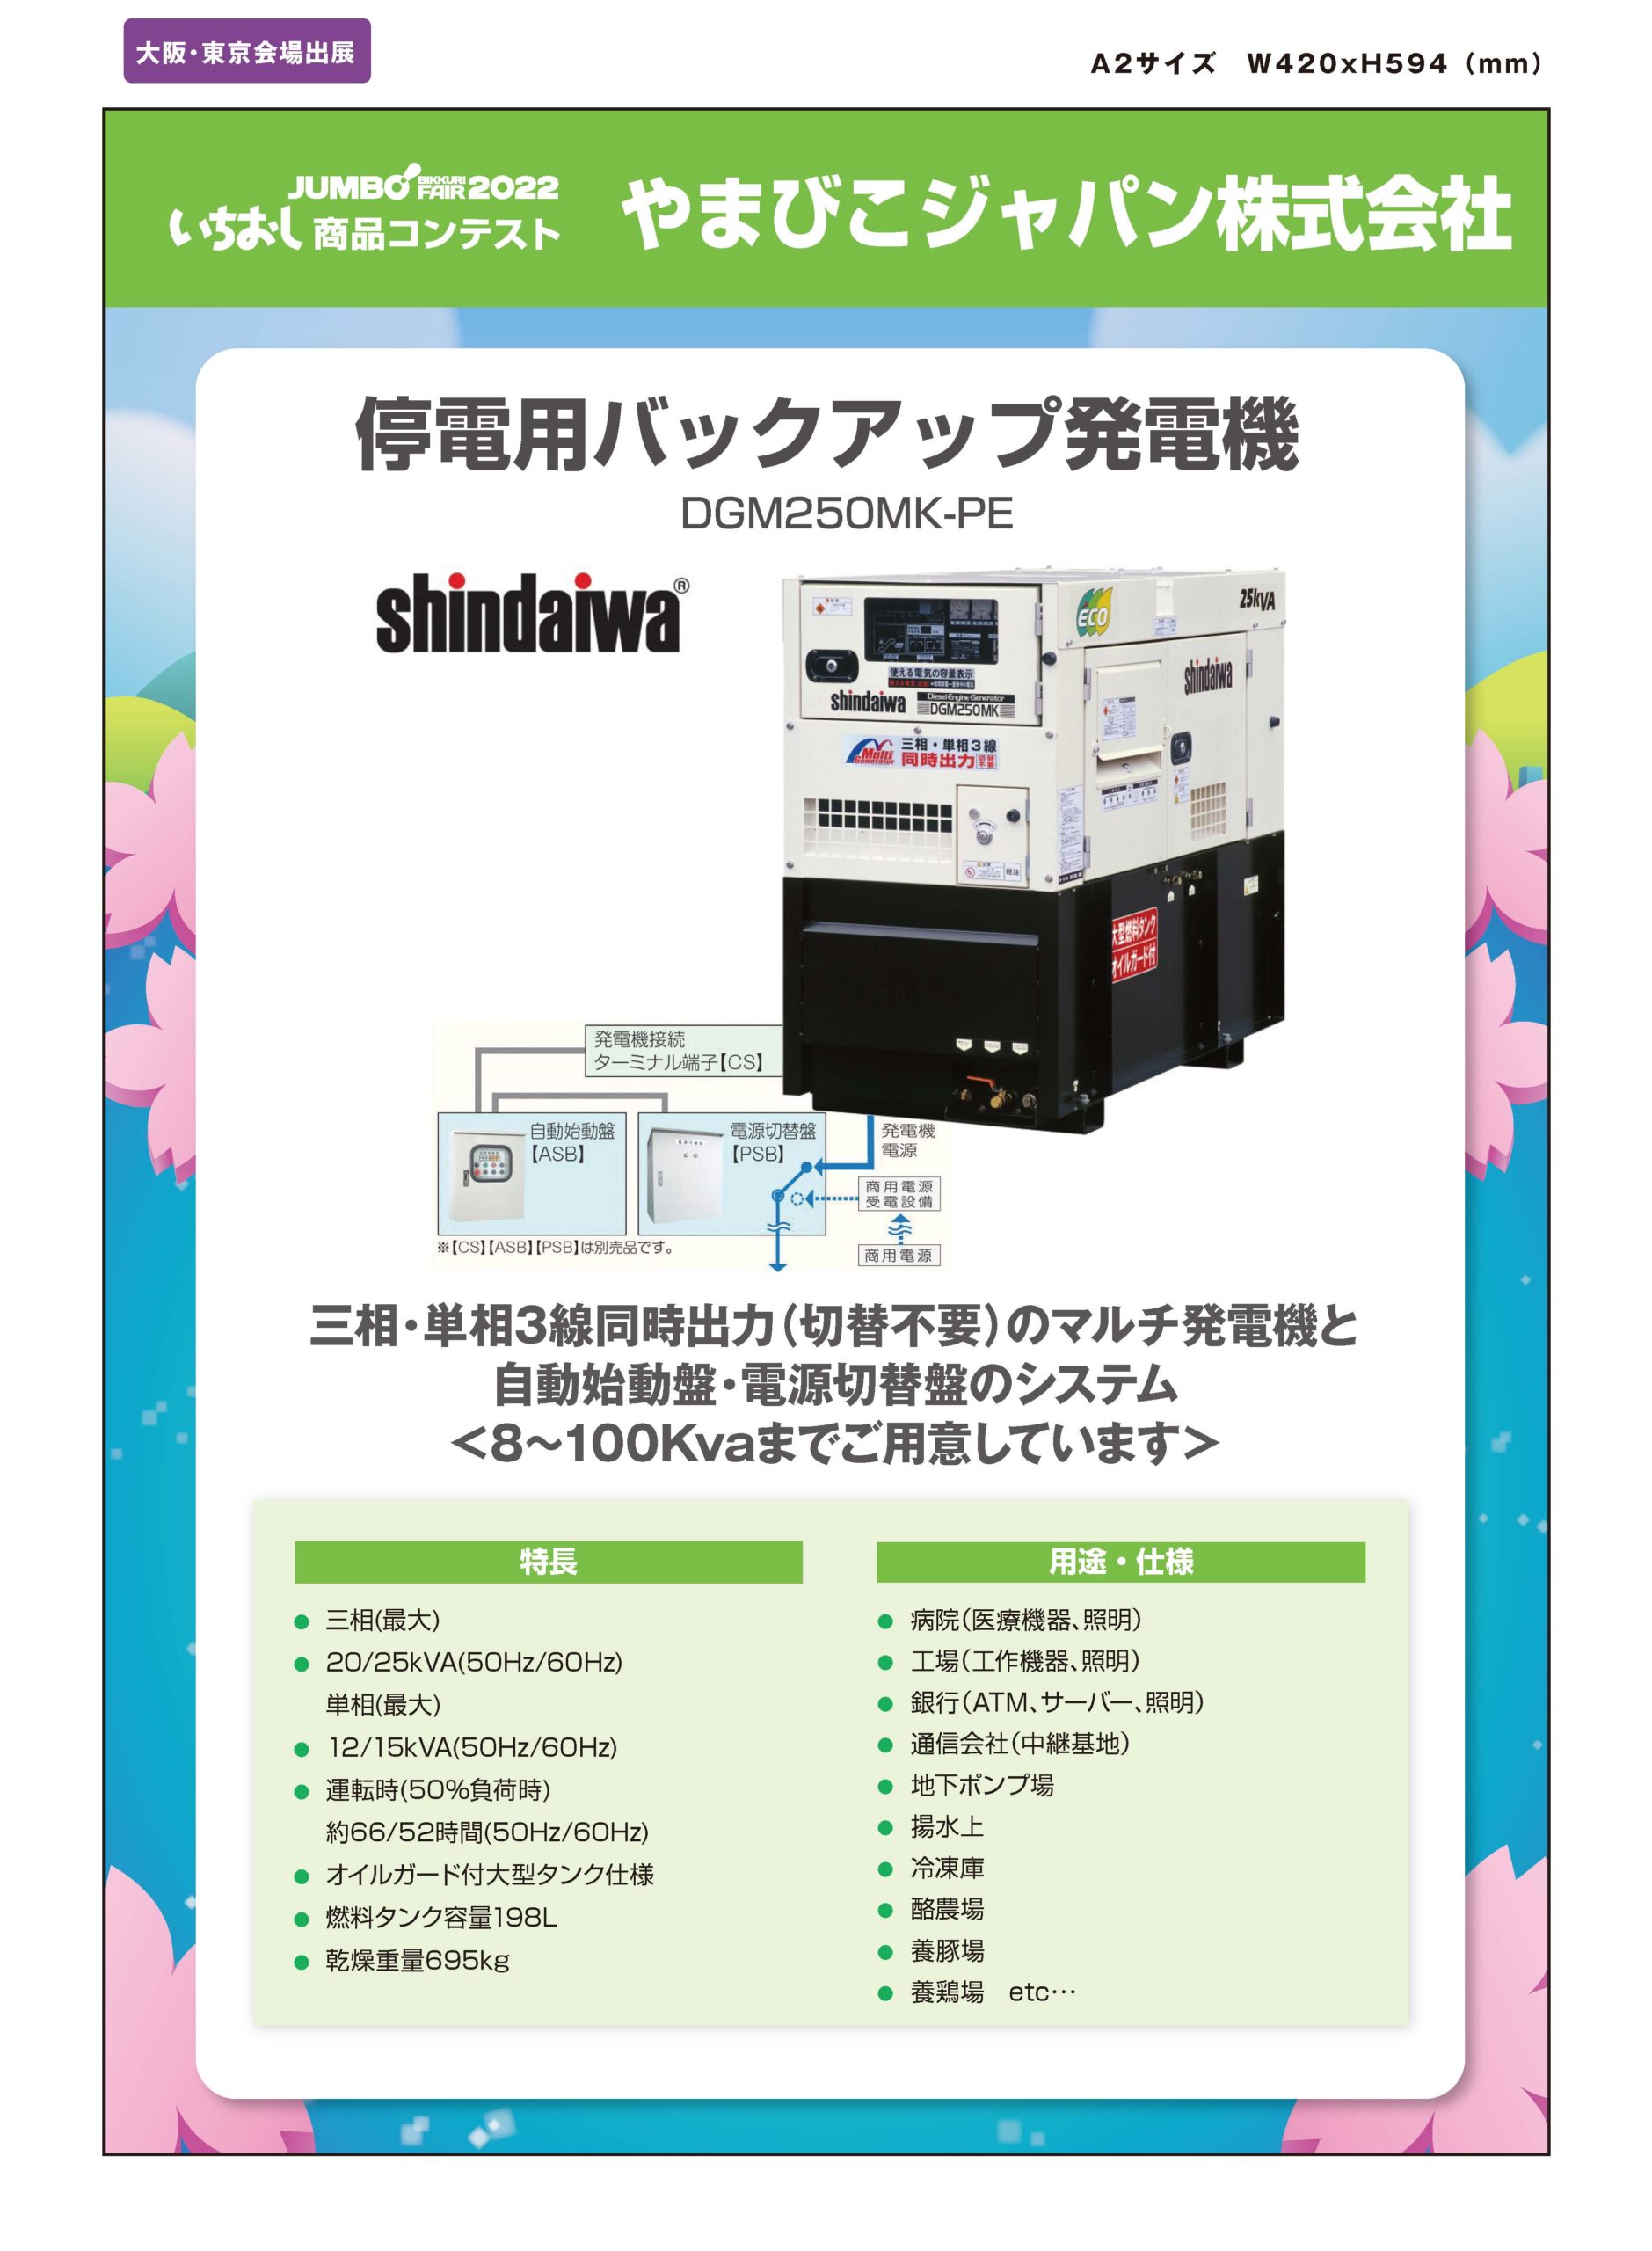 「停電用バックアップ発電機」やまびこジャパン株式会社の画像